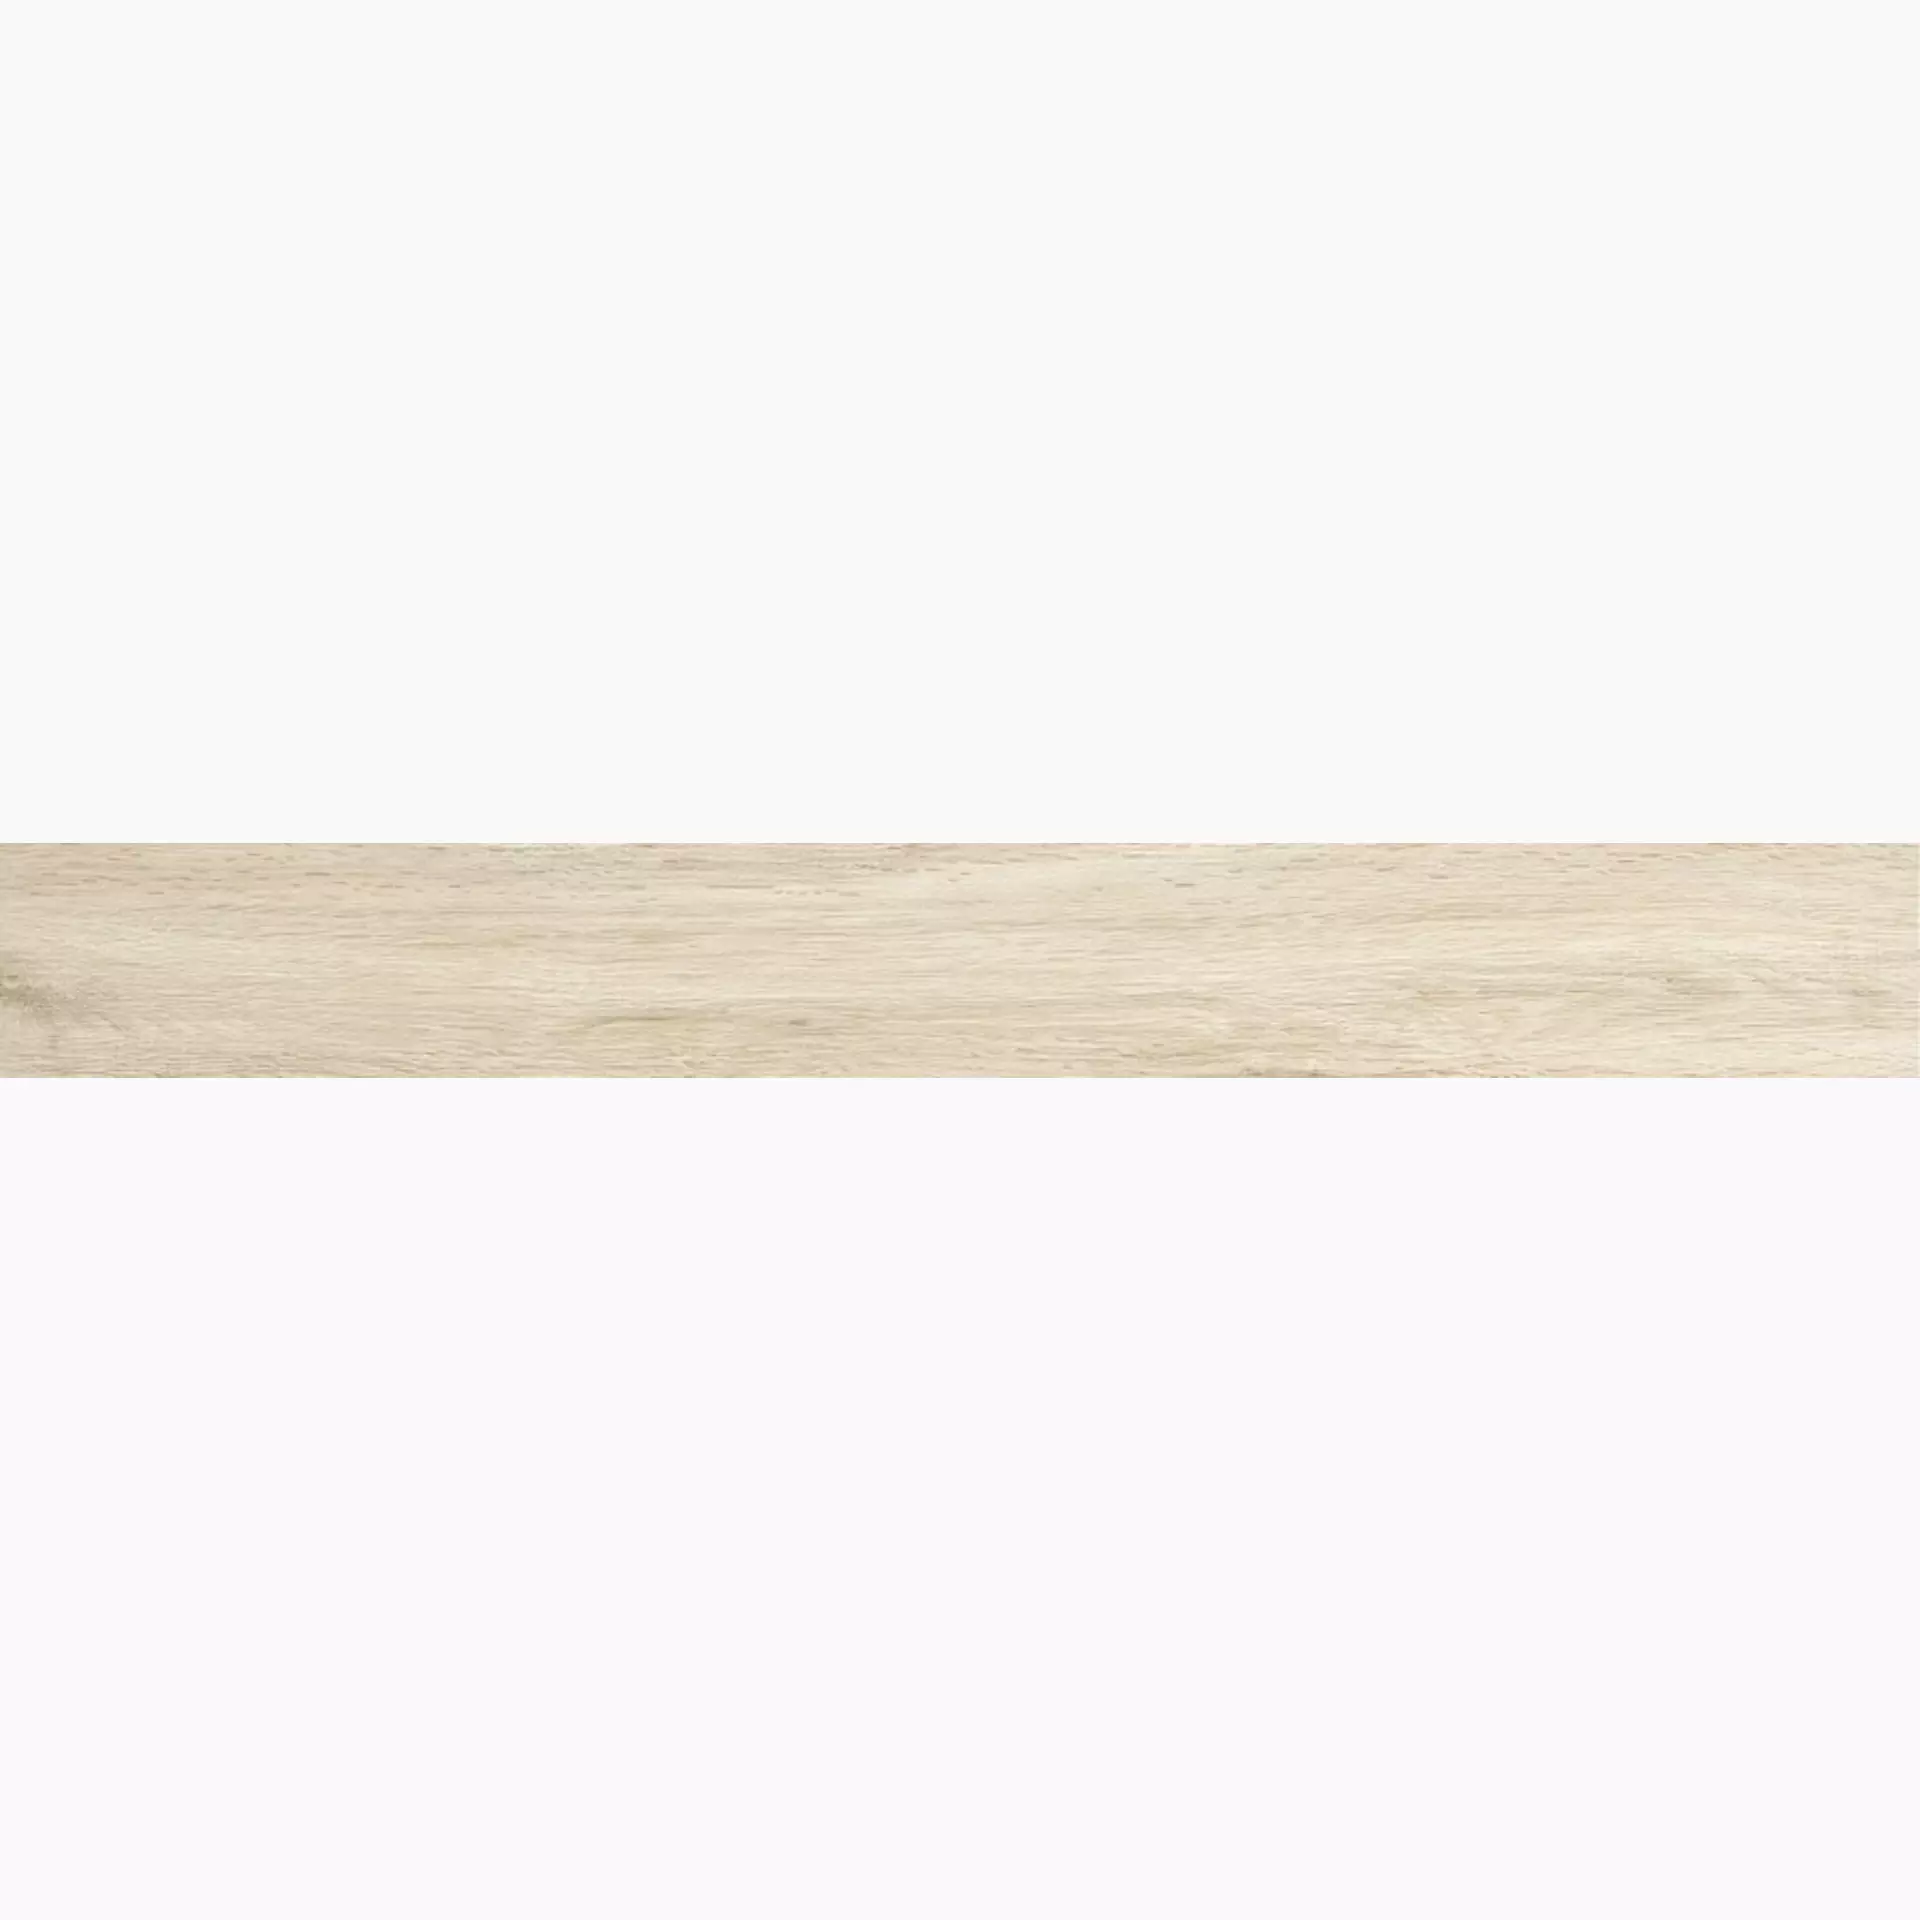 Iris E-Wood White Antislip 898019 11x90cm 9mm